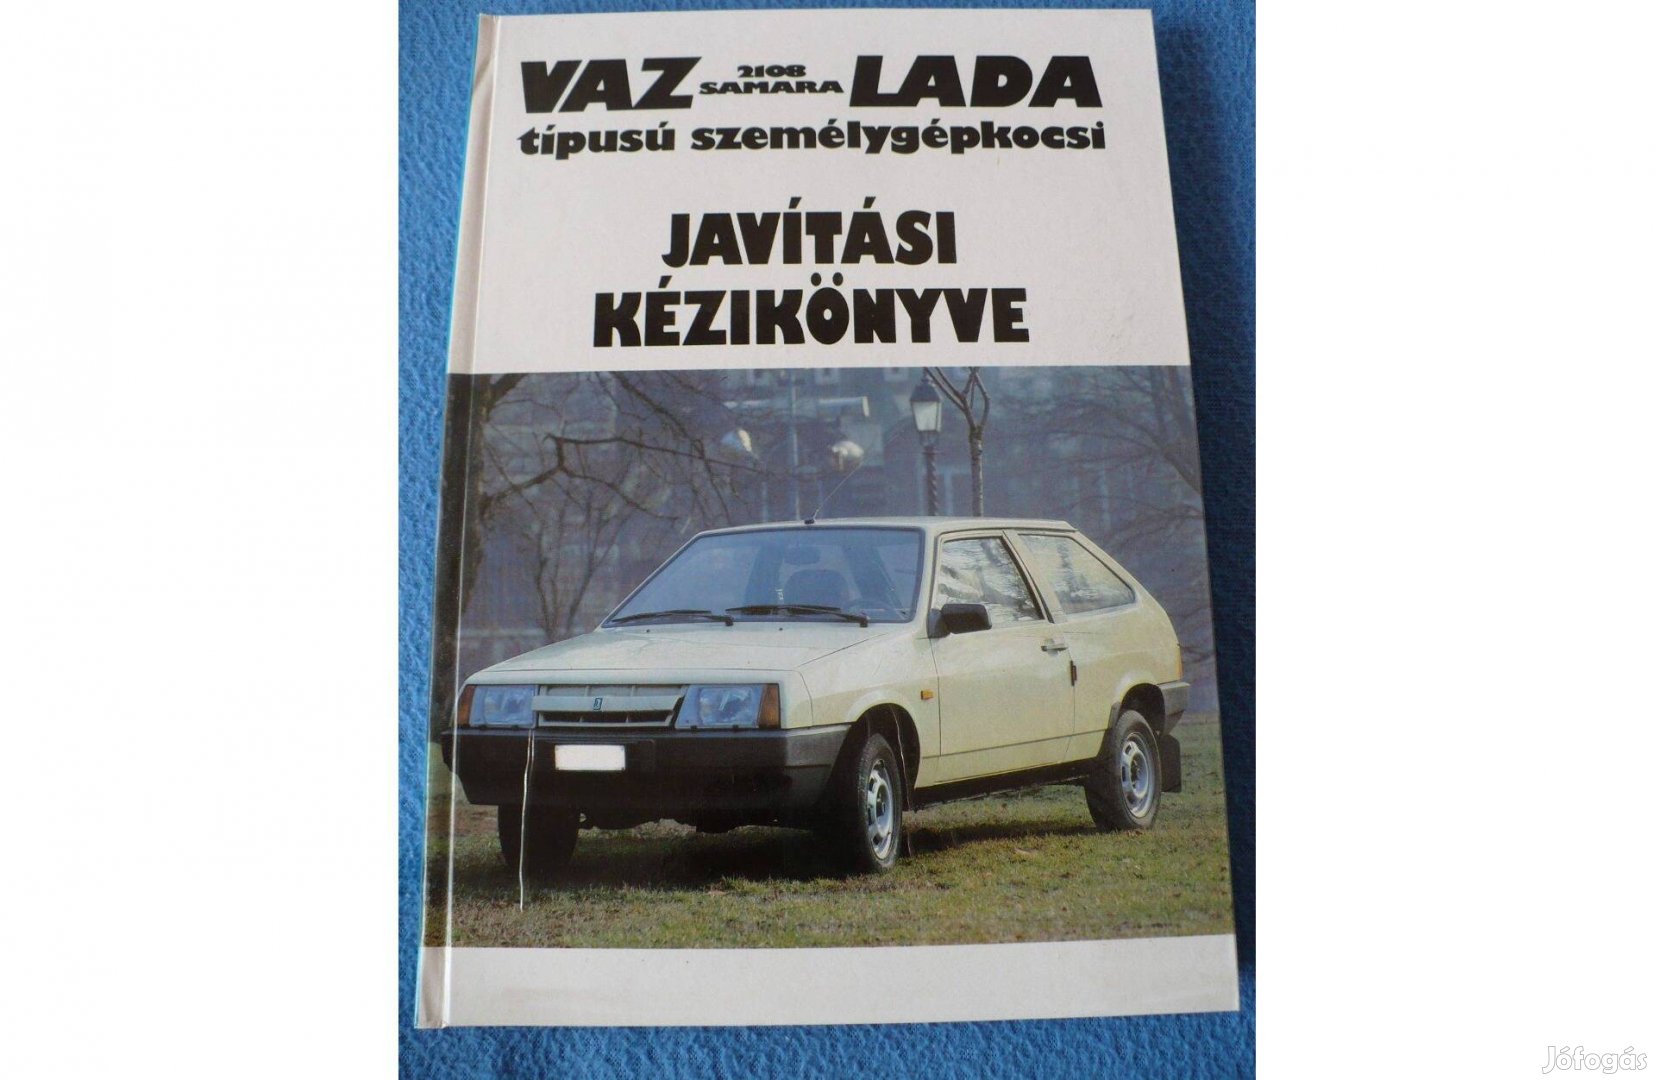 VAZ-Lada típusú személygépkocsi - javítási kézikönyve